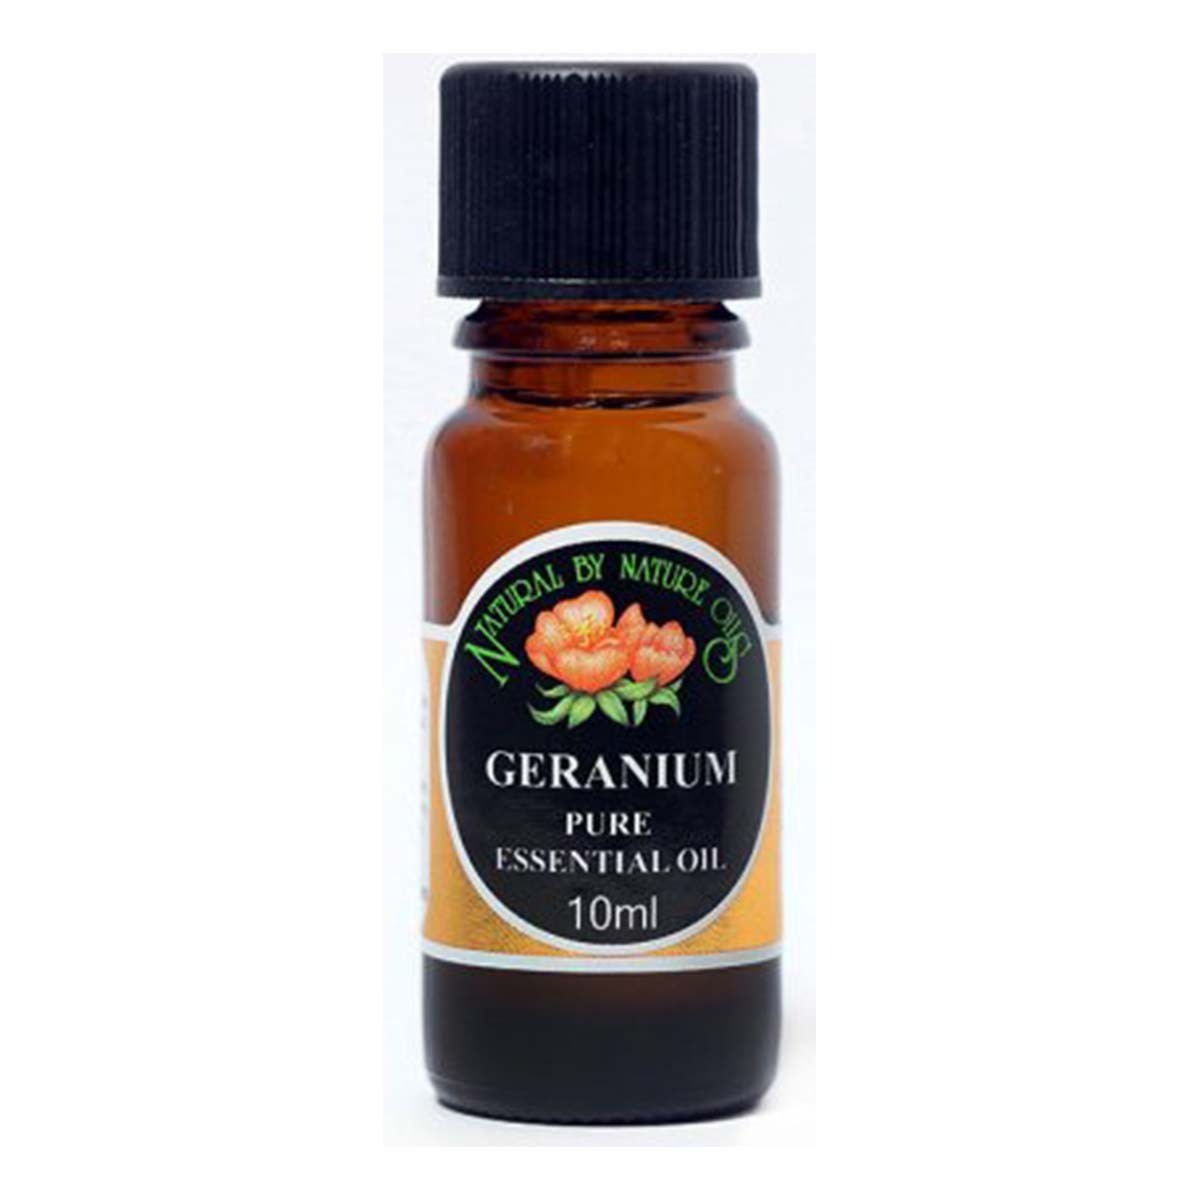 Geranium Pure Essential Oil 10ml - Pronatural